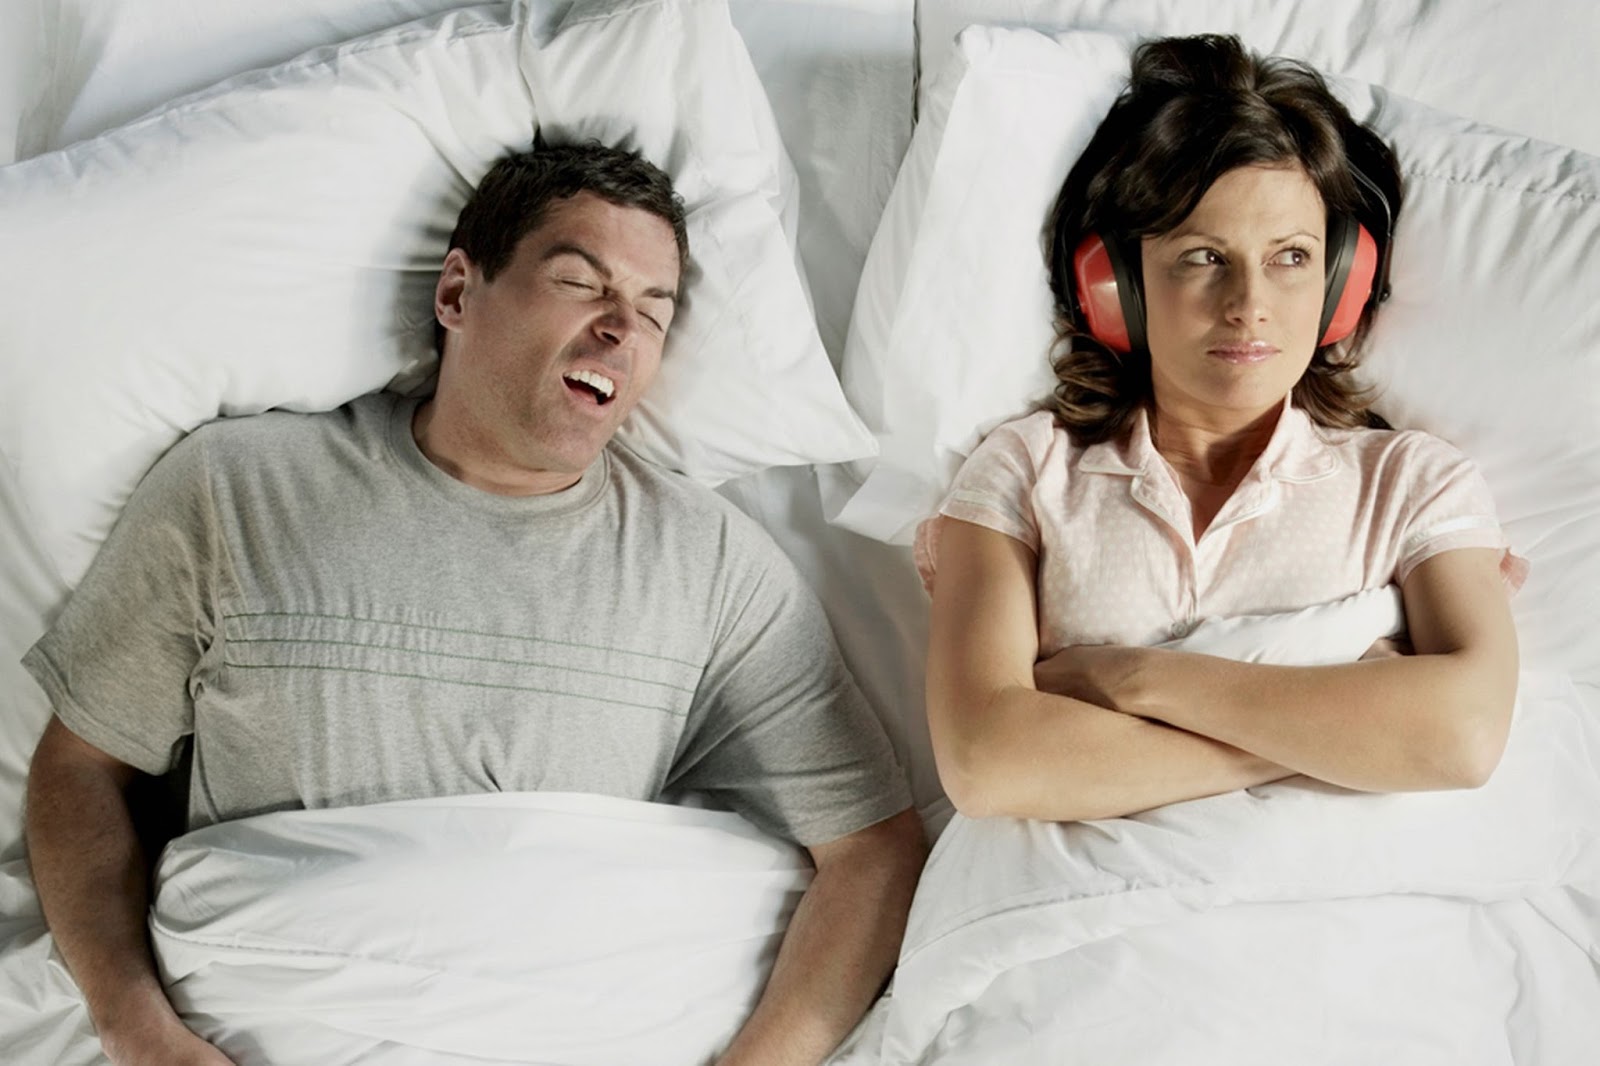 How-to-get-rid-of-loud-snoring.jpg